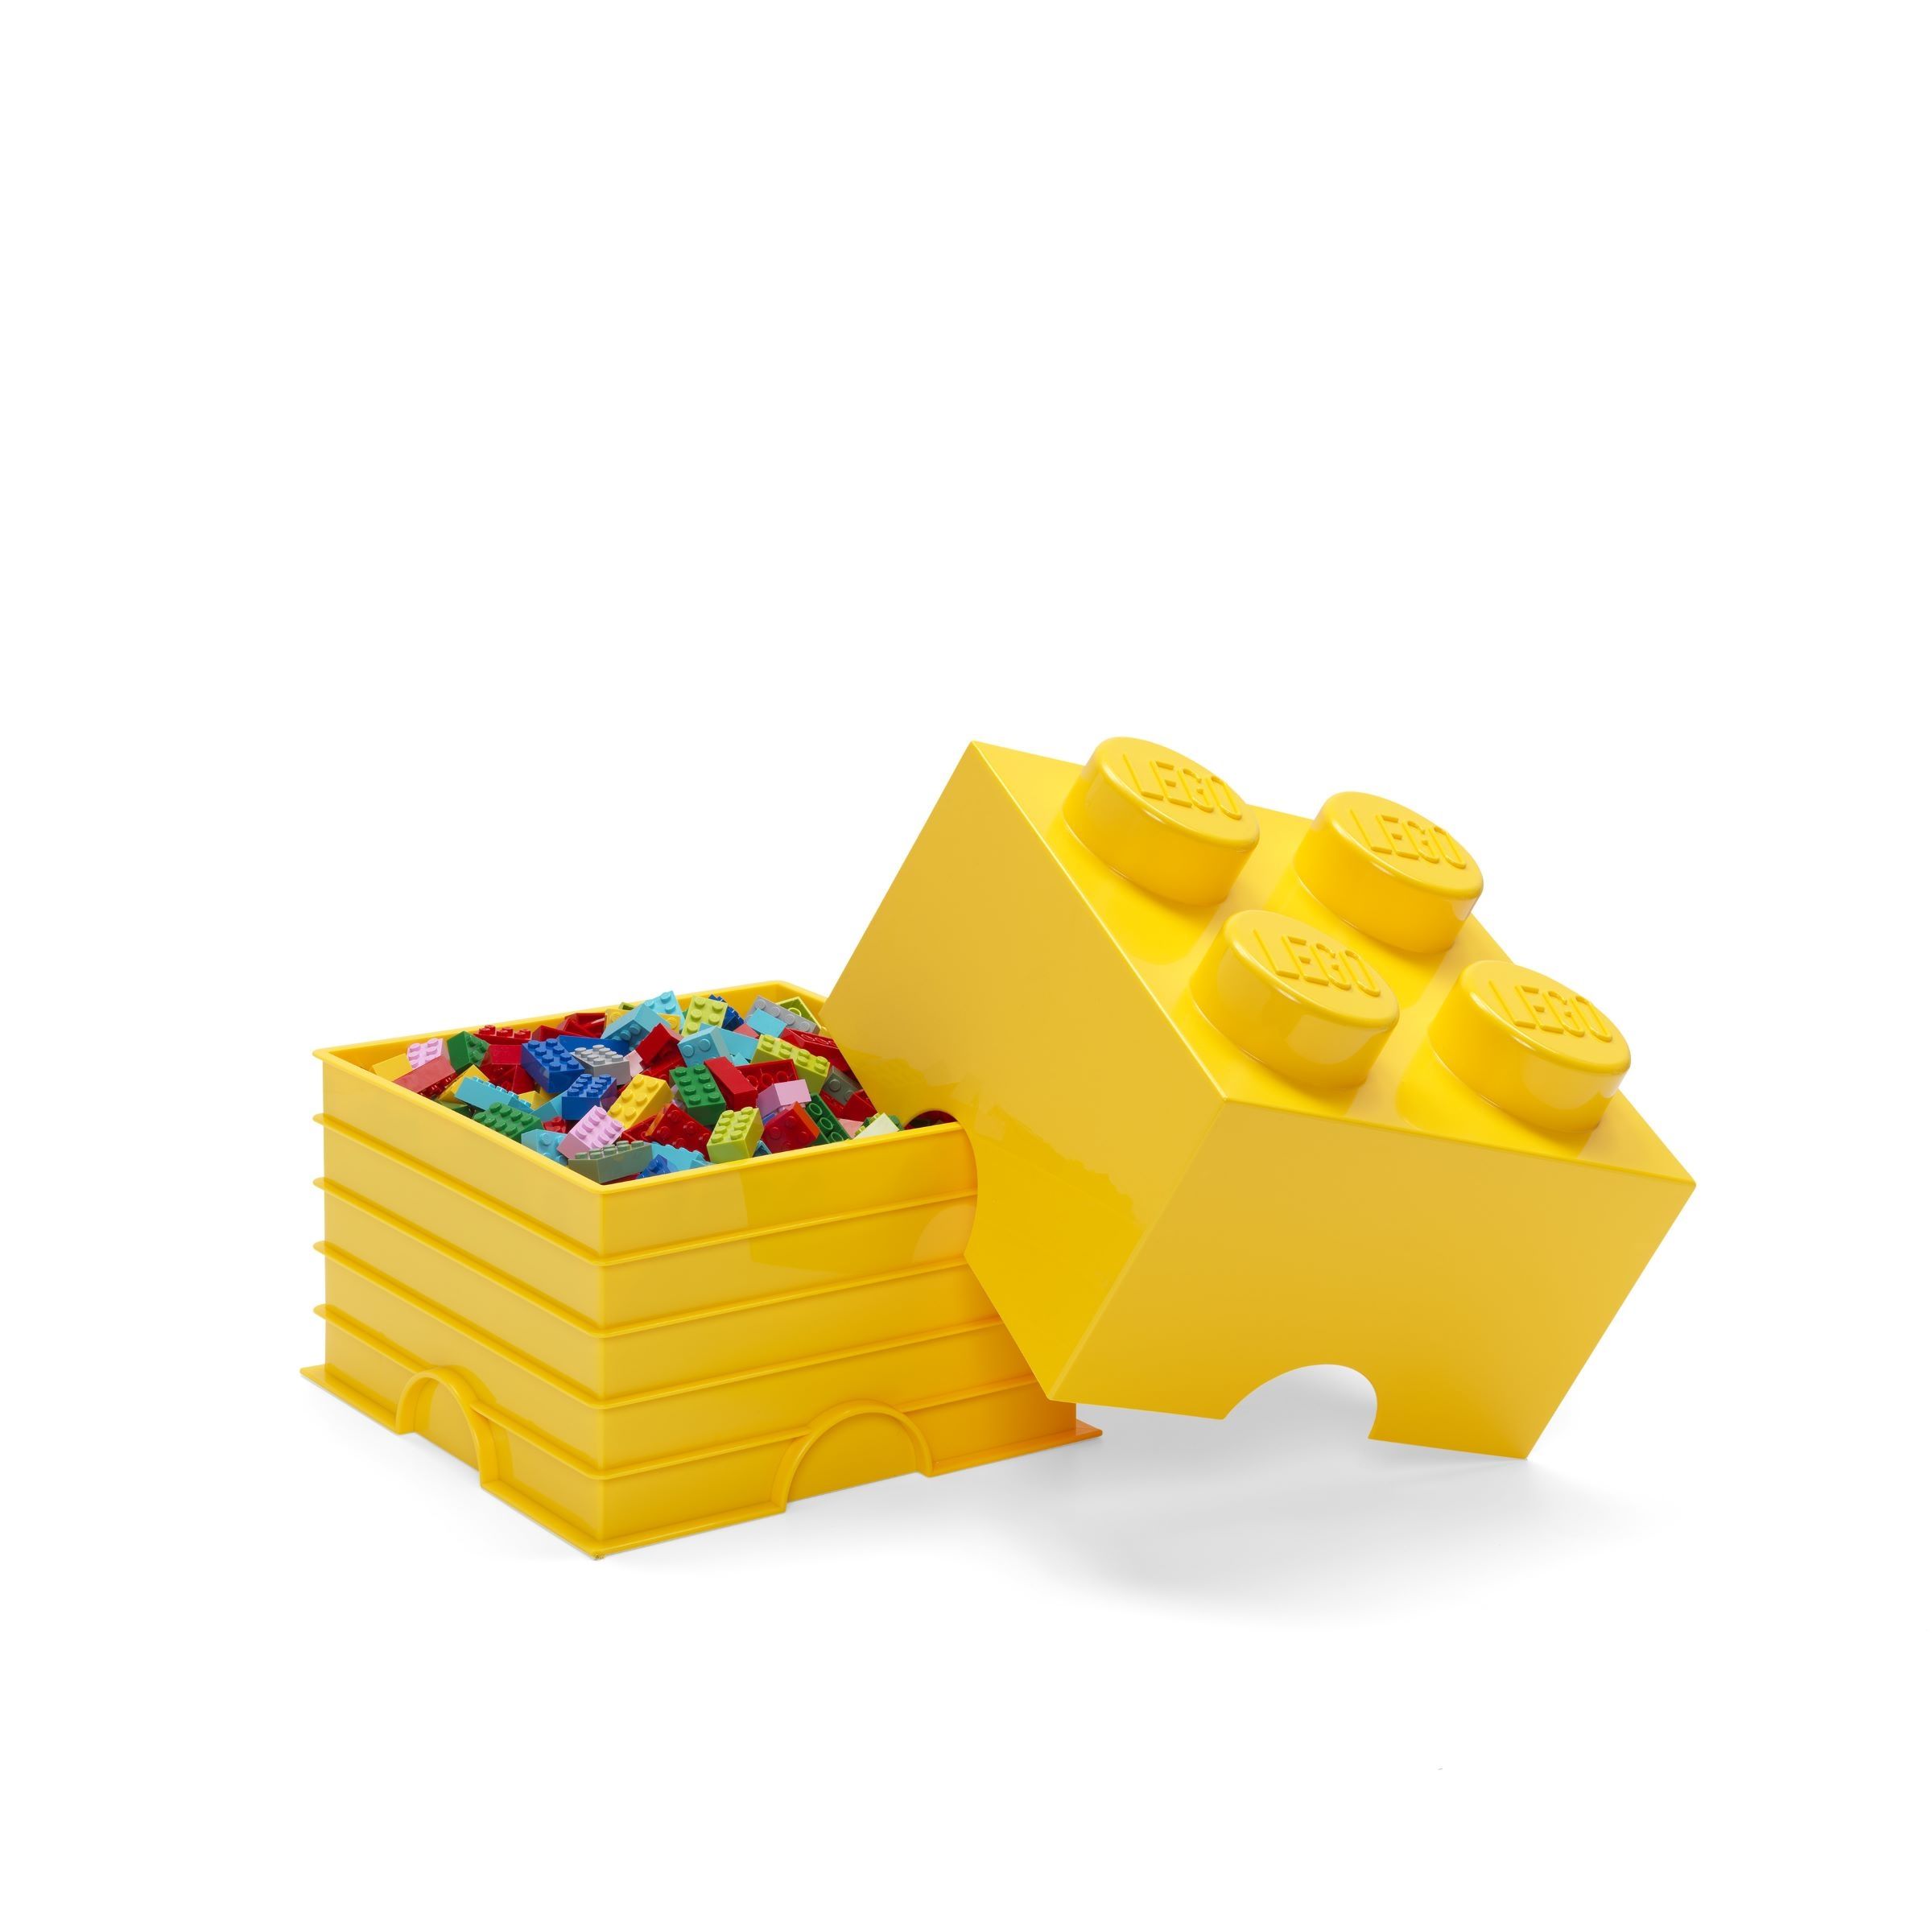 LEGO Gear 5007128 Aufbewahrungsstein mit 4 Noppen in Gelb LEGO_5007128_alt2.jpg